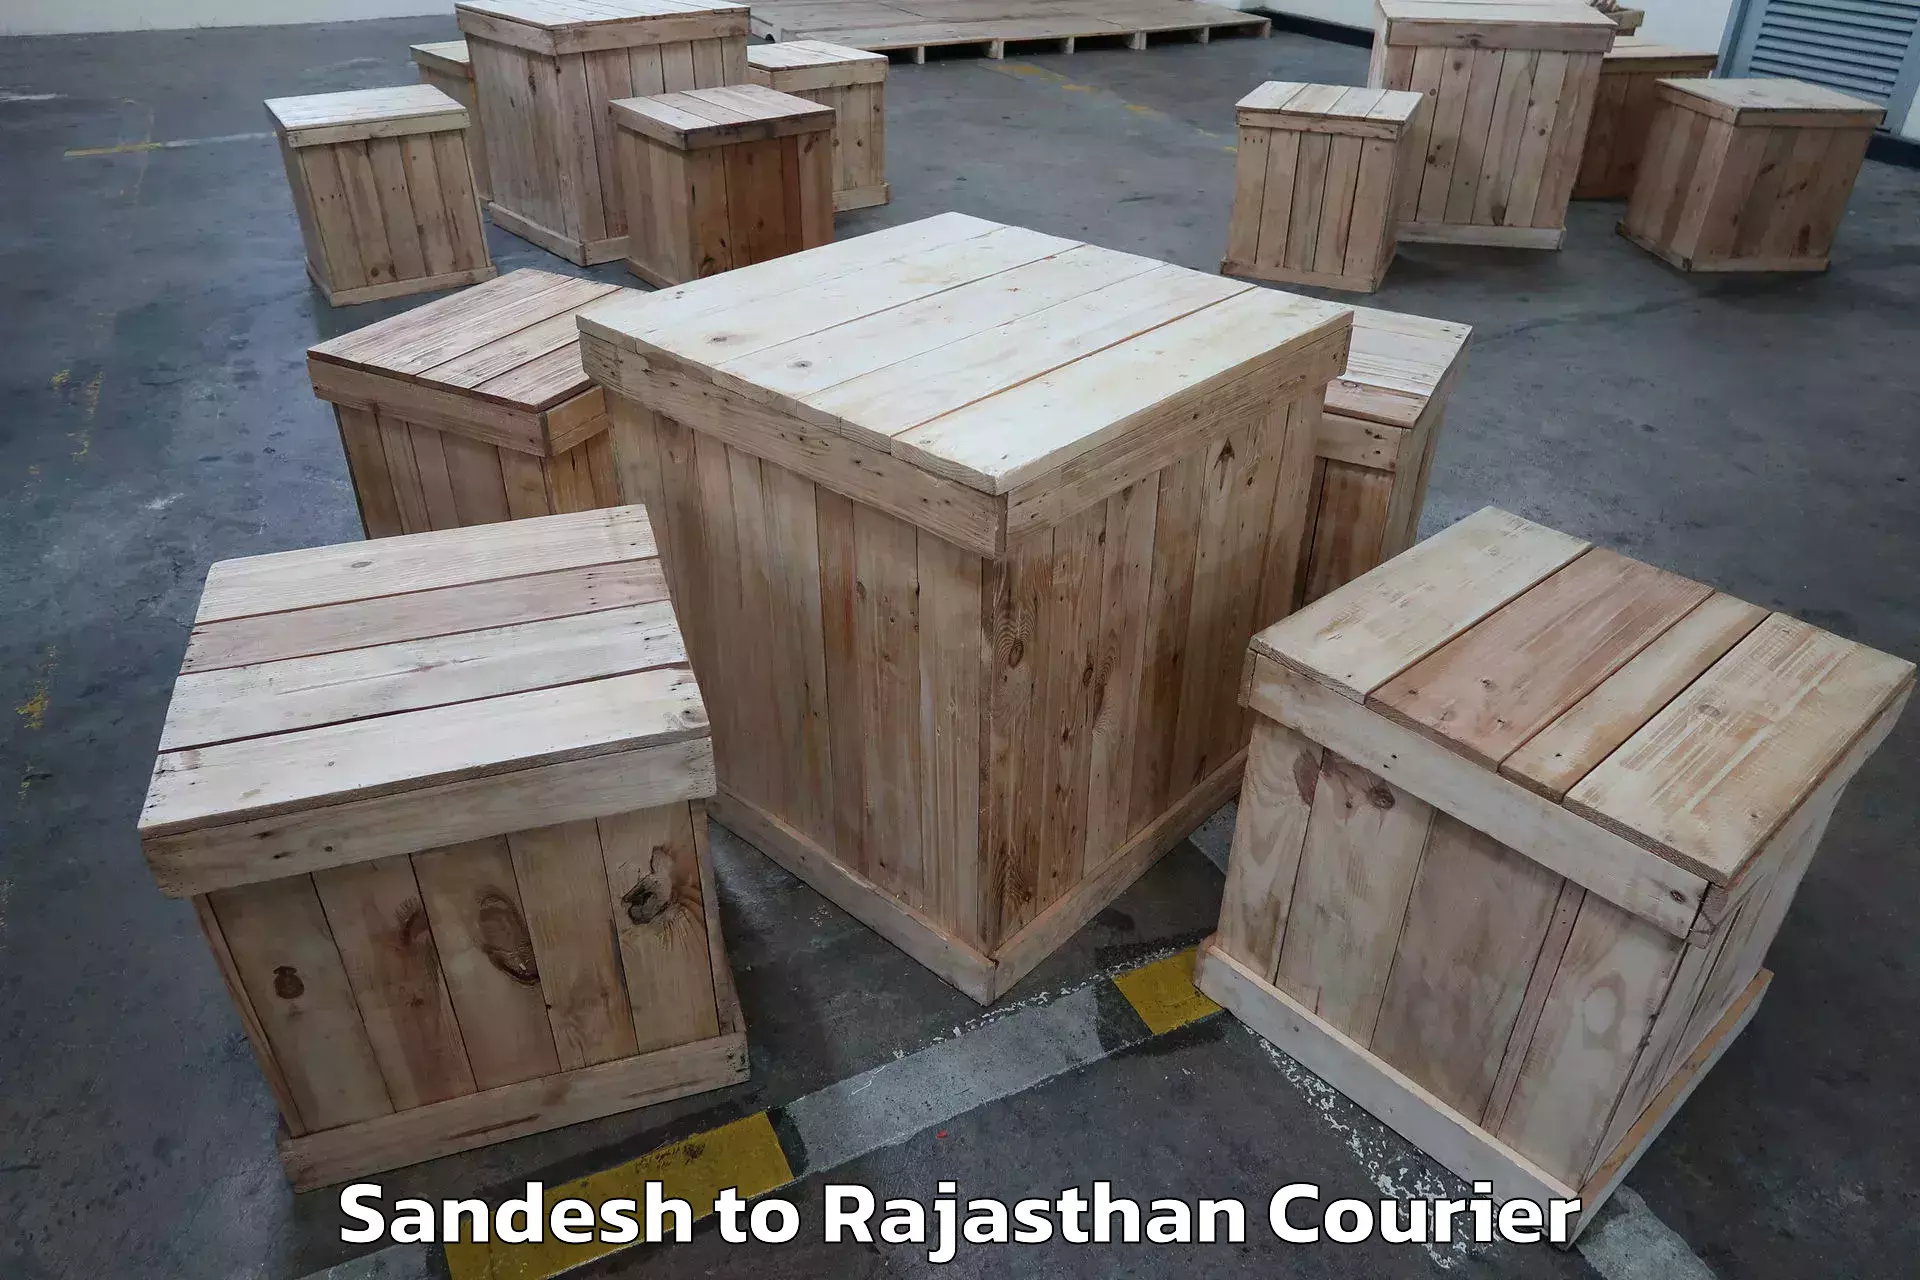 Furniture moving plans Sandesh to Rajasthan